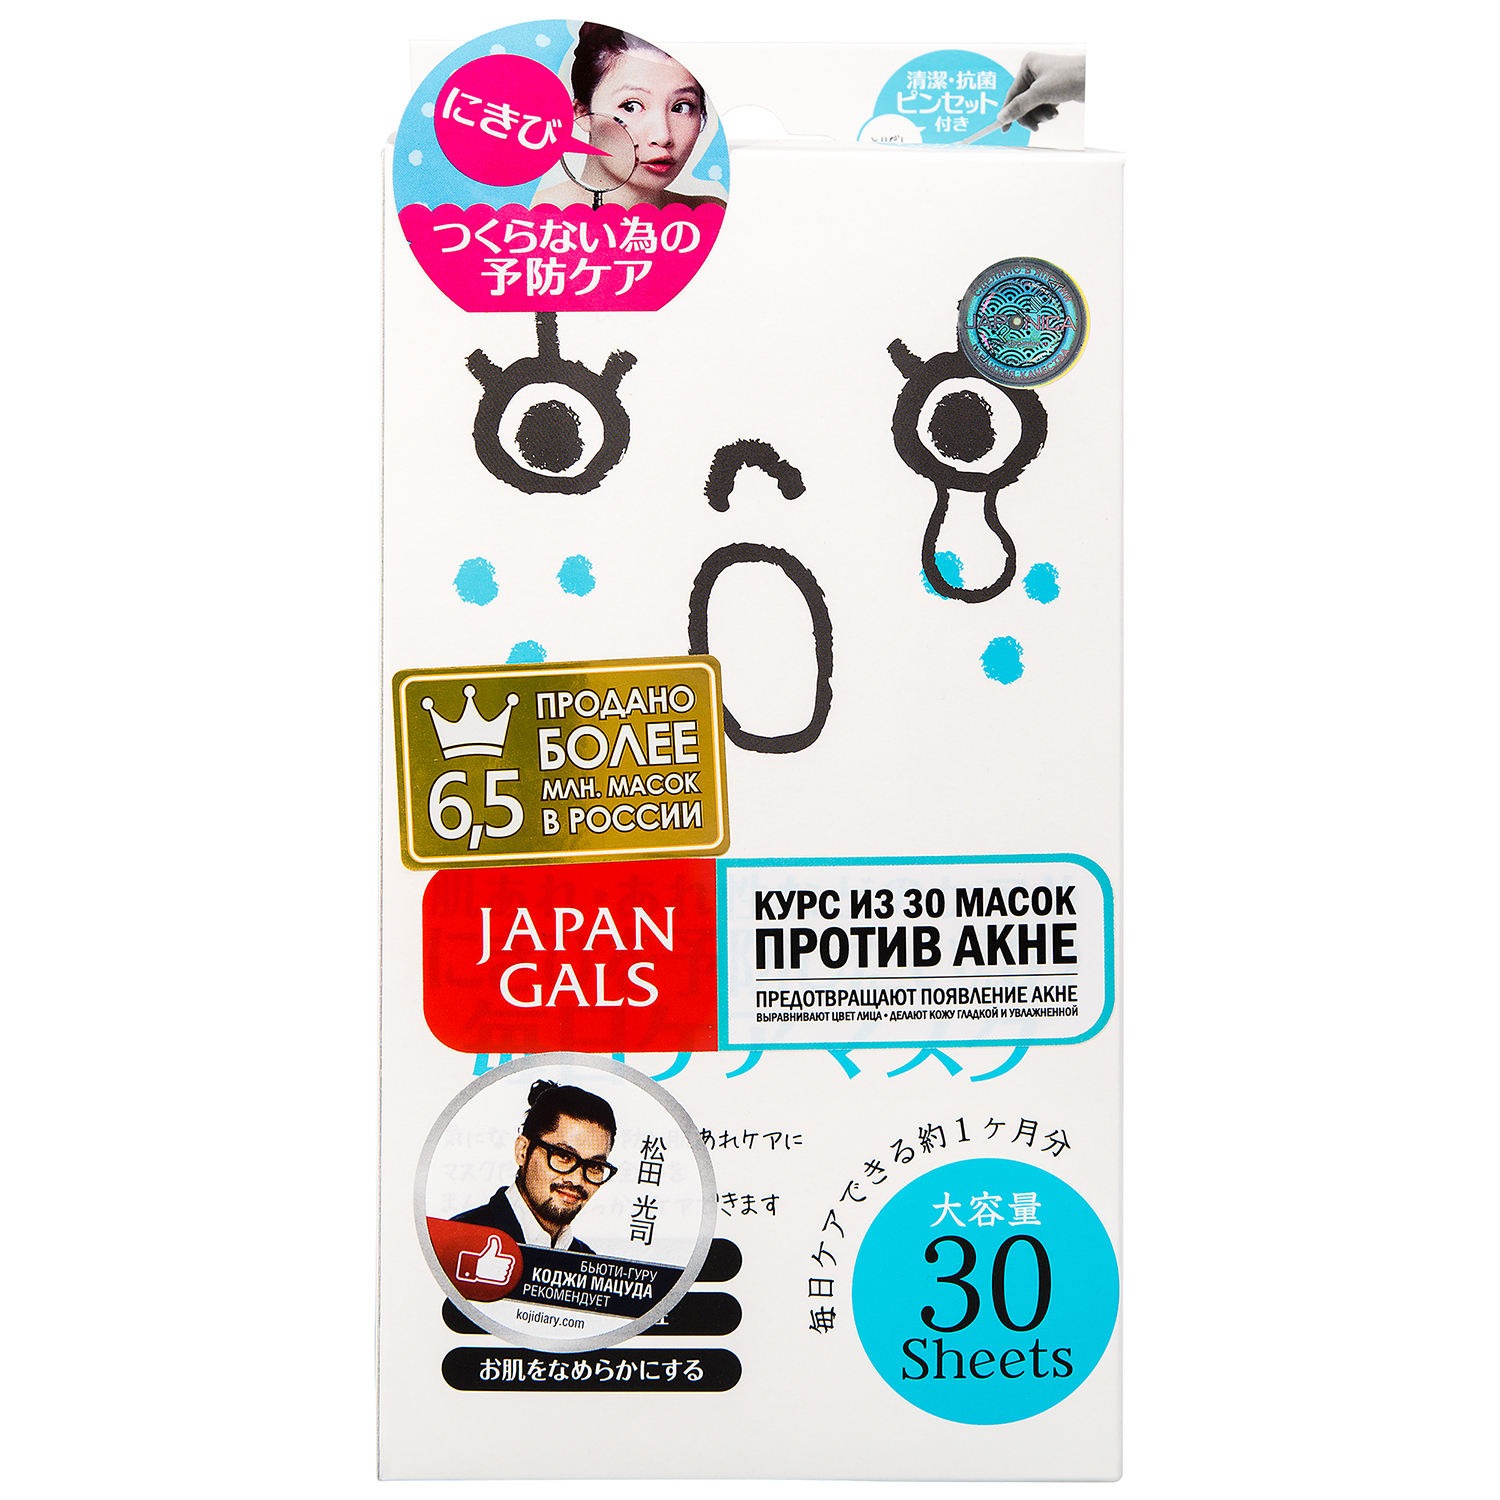 купить Japan Gals Курс масок для лица против акне, 30 шт - заказ и доставка в Москве и Санкт-Петербурге